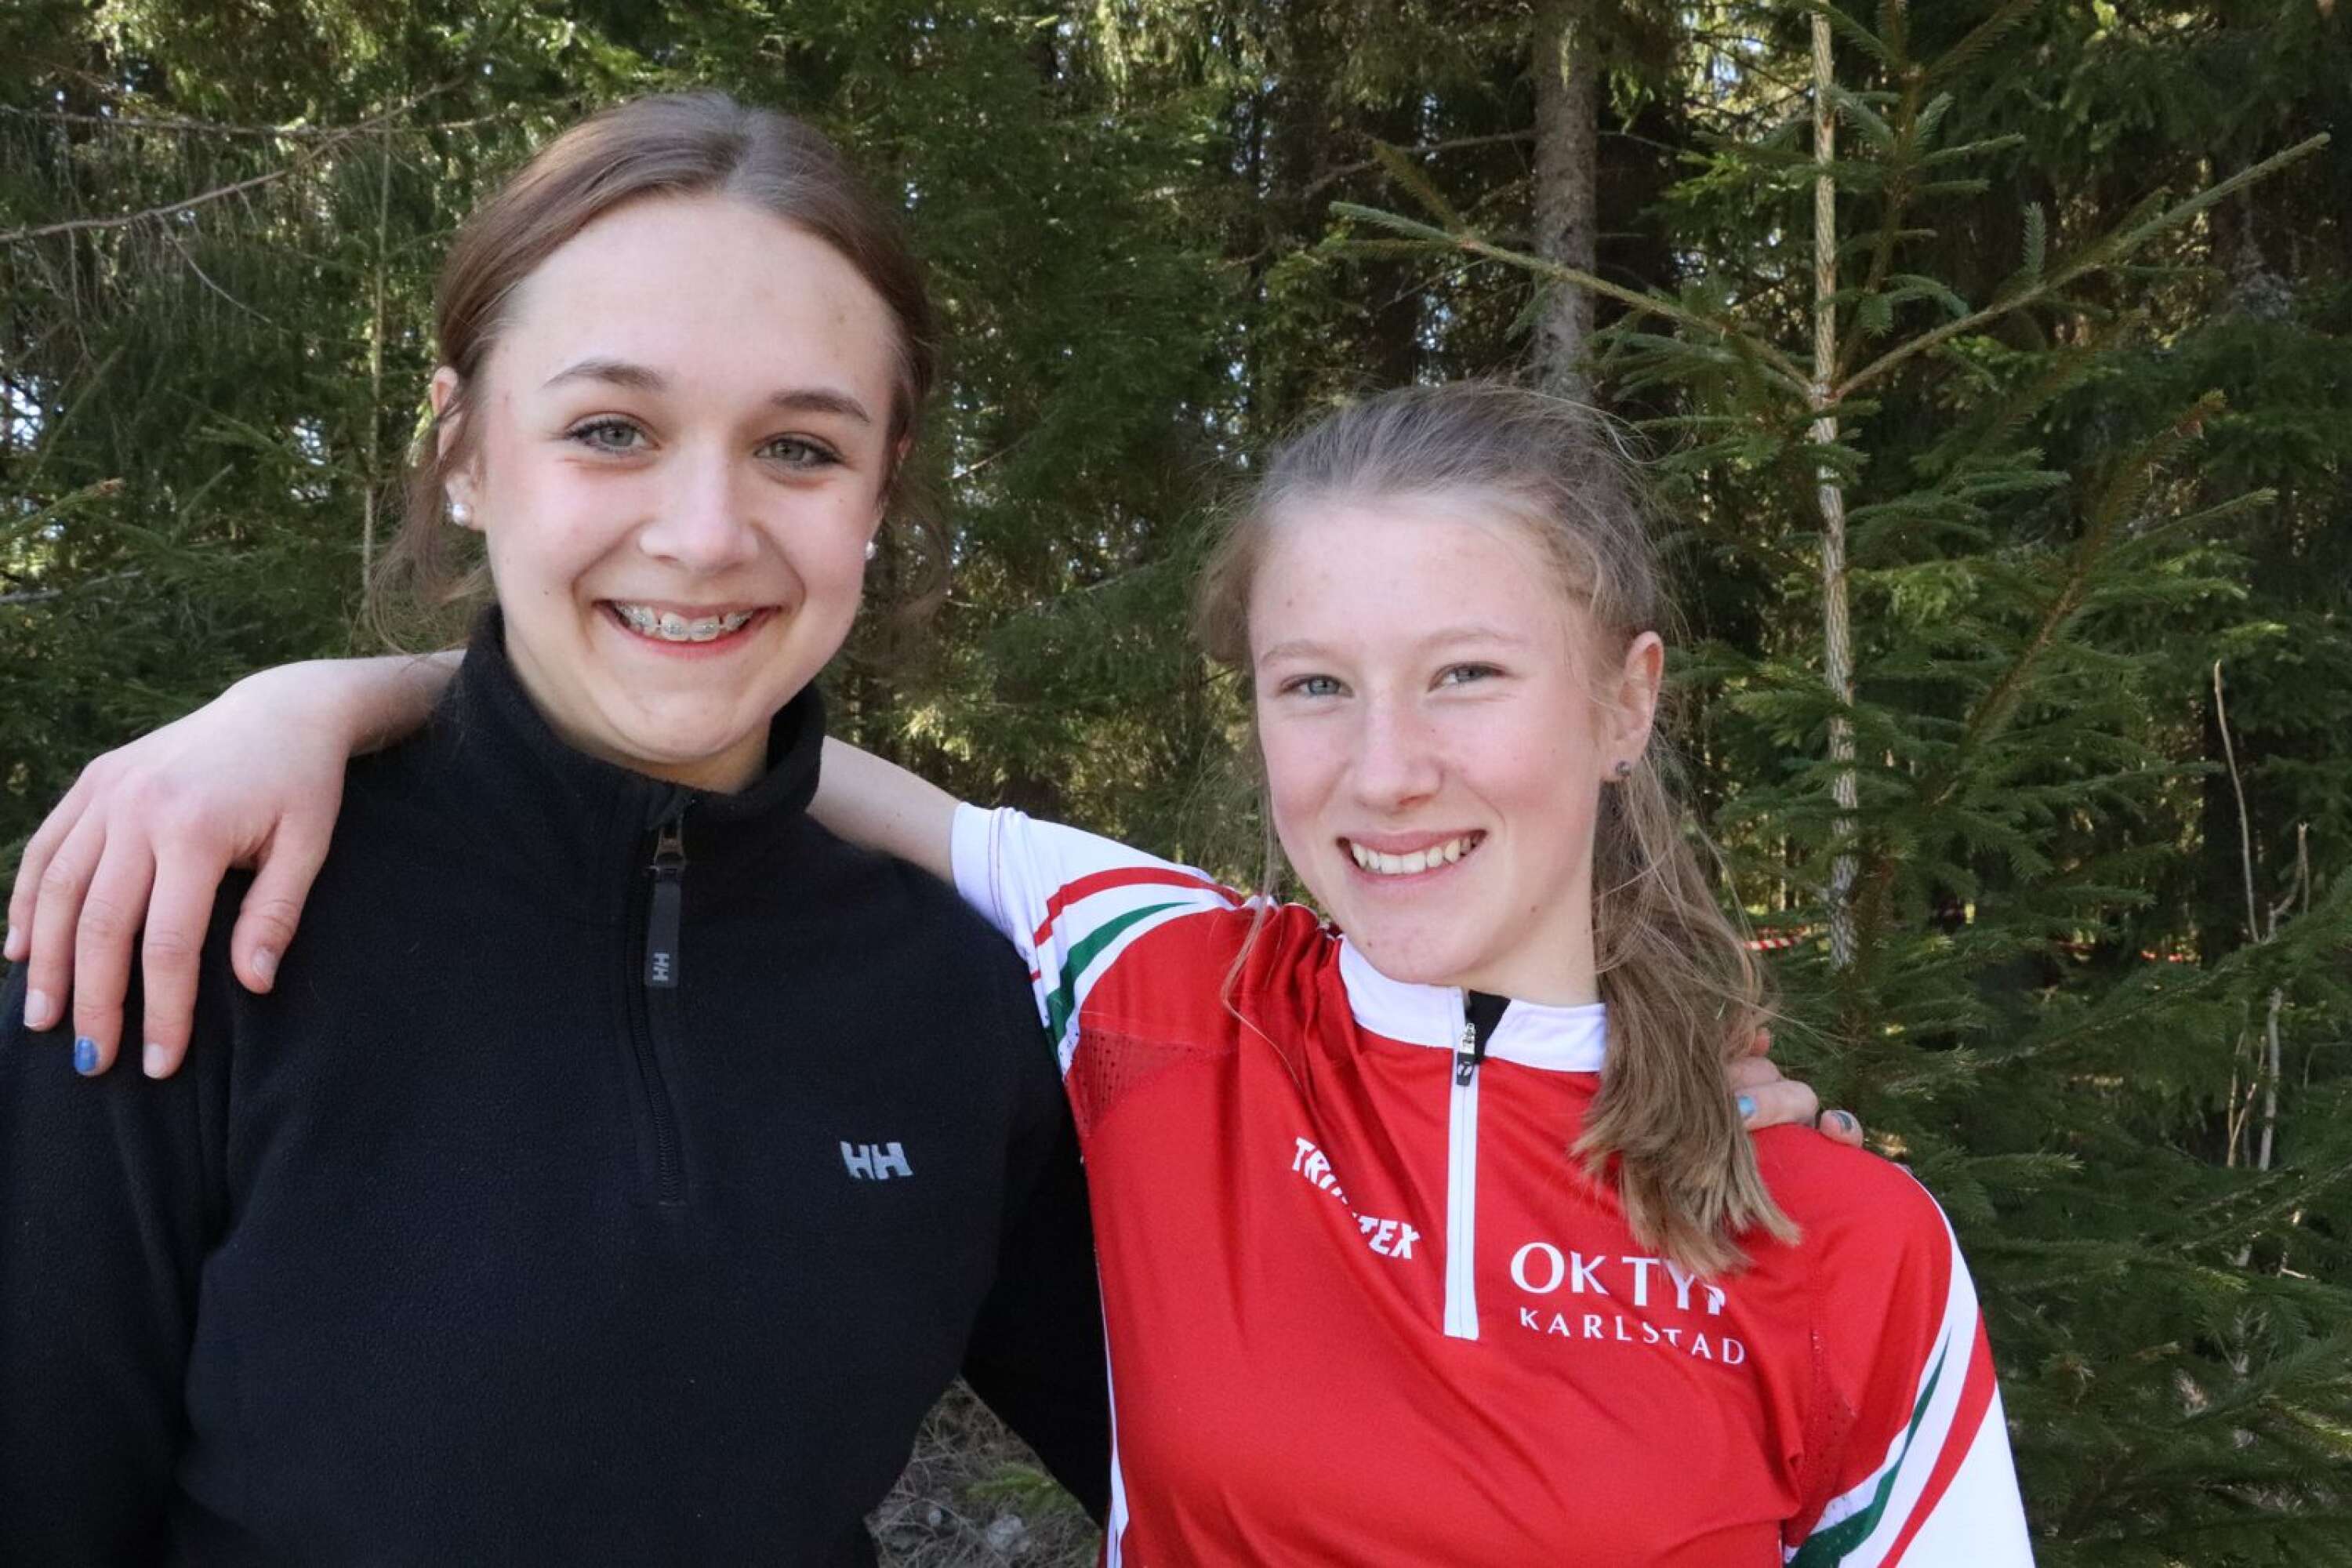 Felica Rööhs, Skattkärr och Izabella Ljungberg, Tyr, var framgångsrikast av de värmländska tjejerna i Letälvsträffens D16-klass. Izabella vann och Felicia blev fyra.